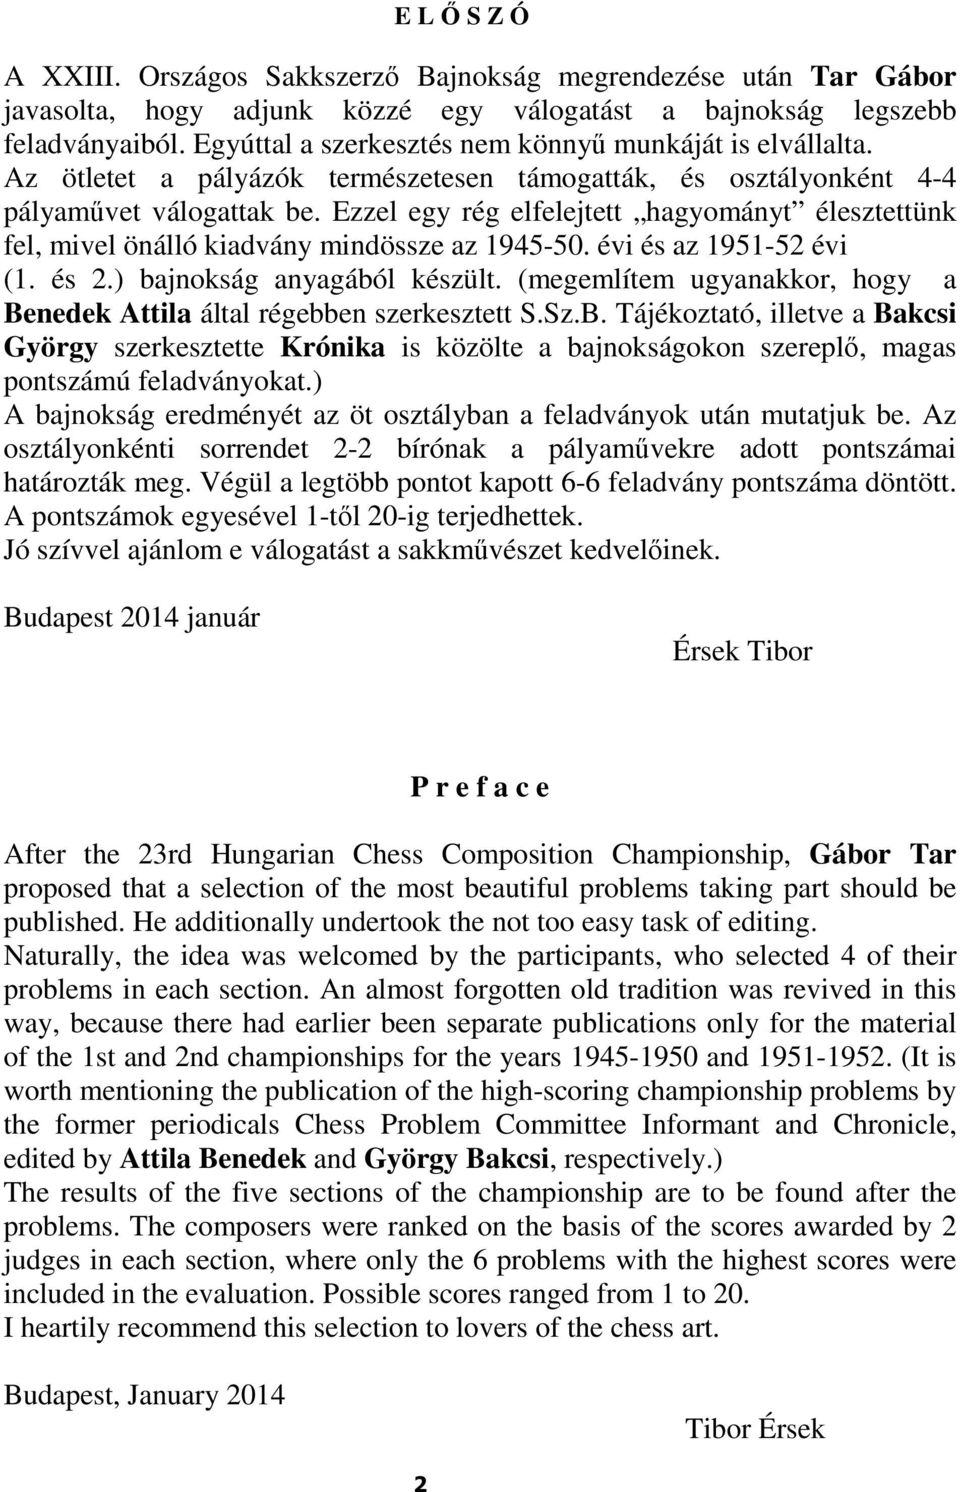 mindössze az 1945-50 évi és az 1951-52 évi (1 és 2) bajnokság anyagából készült (megemlítem ugyanakkor, hogy a Benedek Attila által régebben szerkesztett SSzB Tájékoztató, illetve a Bakcsi György